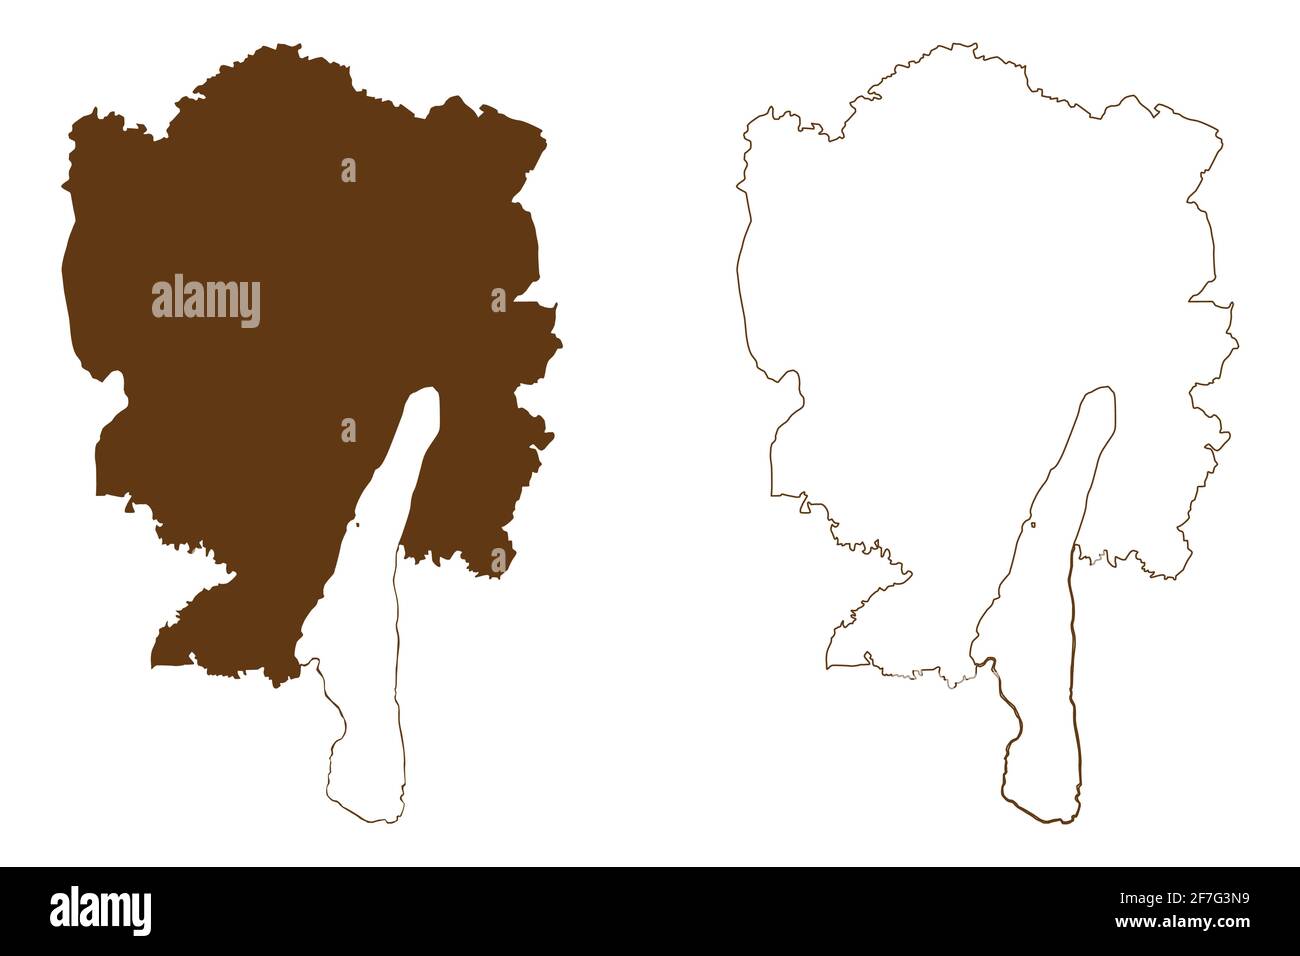 Starnberg district (République fédérale d'Allemagne, district rural haute-Bavière, Free State of Bavaria) carte illustration vectorielle, scribble sketch Starnbe Illustration de Vecteur